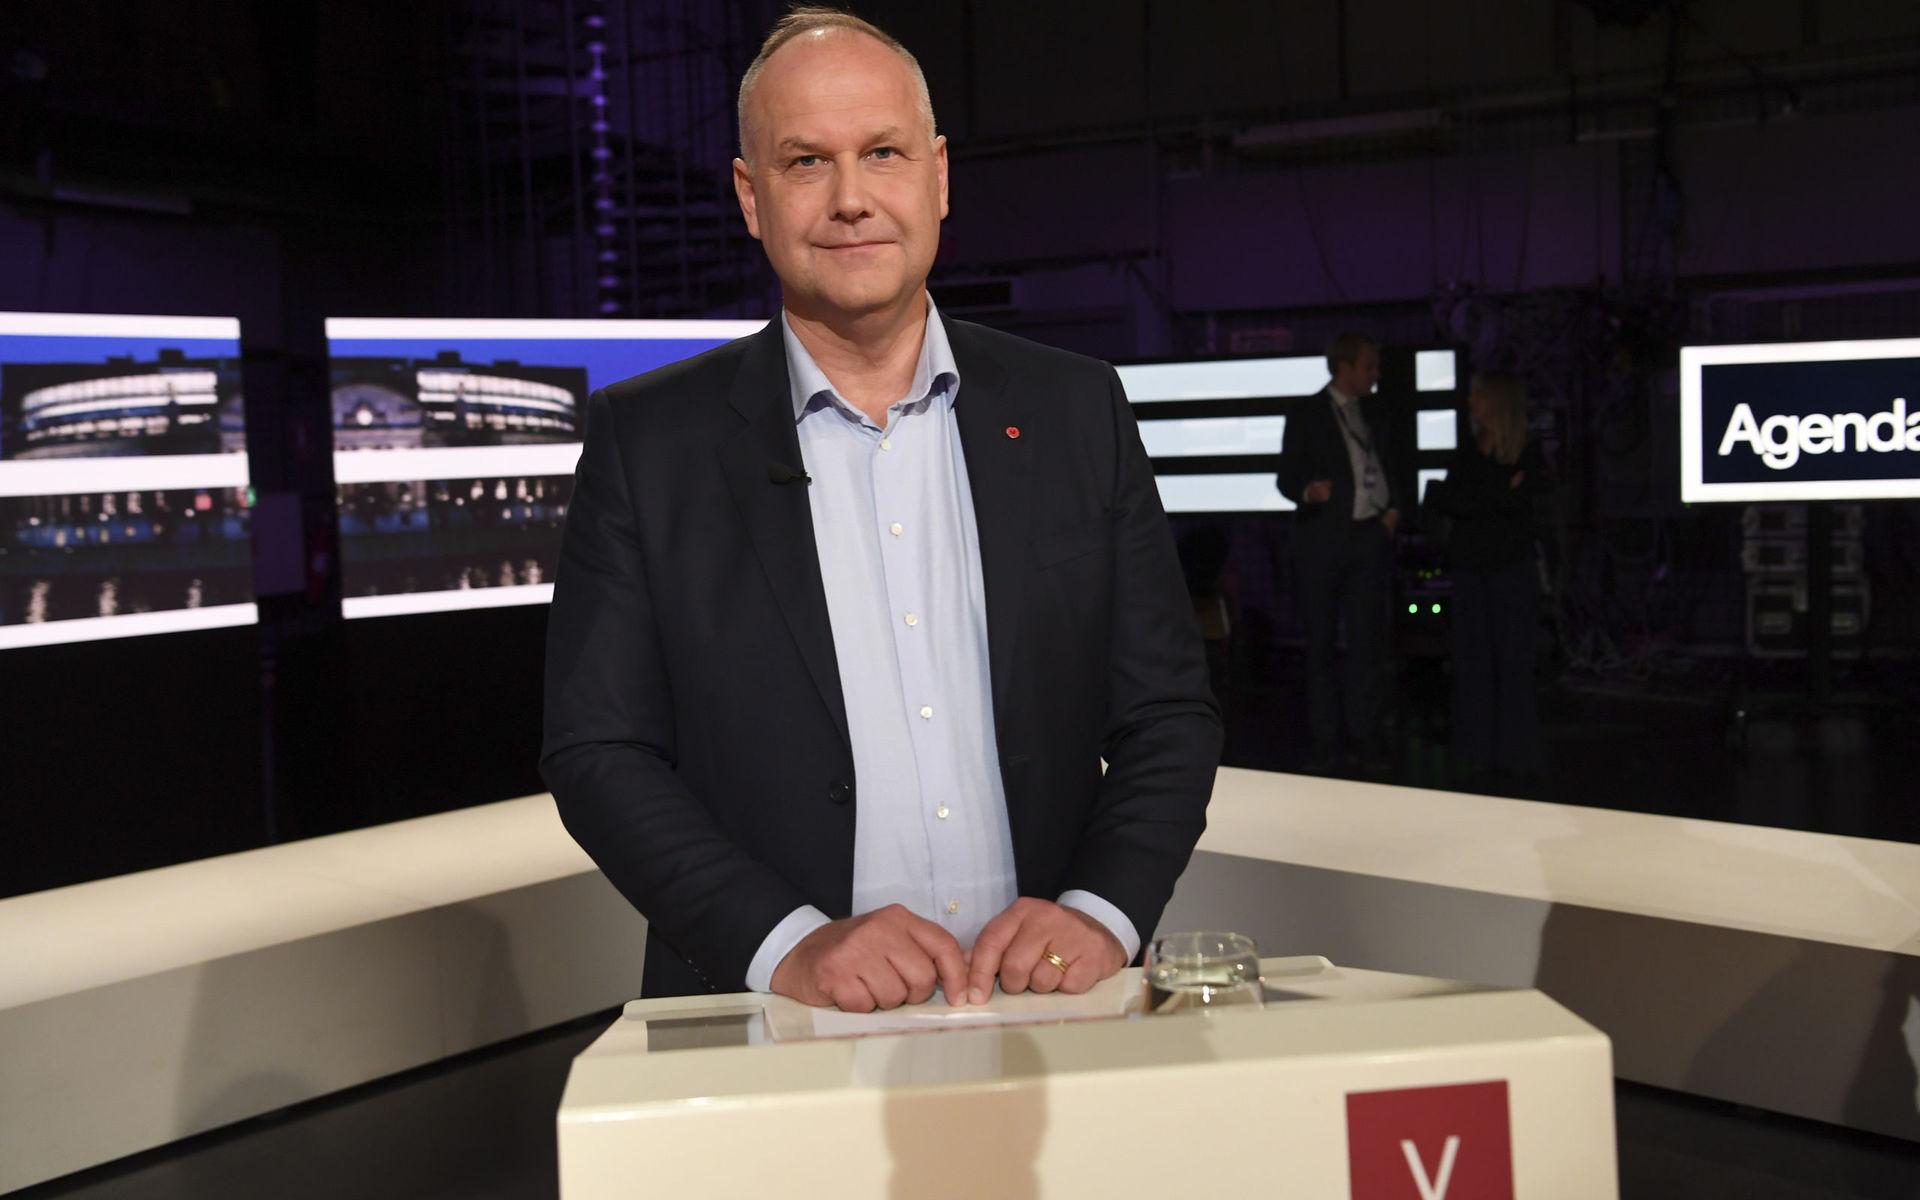 Vänsterpartiets partiledare Jonas Sjöstedt under söndagens partiledardebatt i SVT:s Agenda.